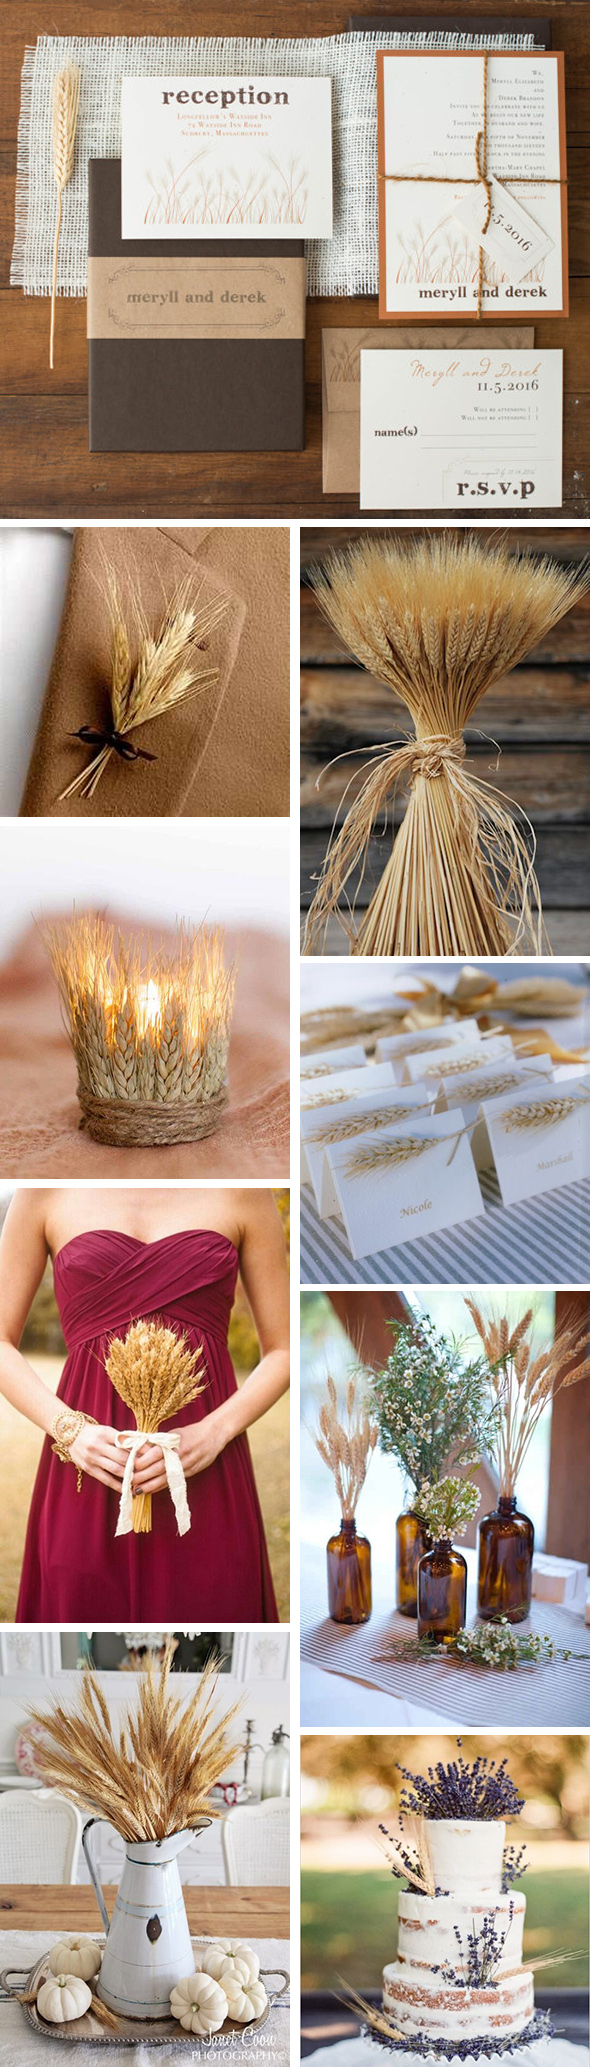 wheat wedding ideas